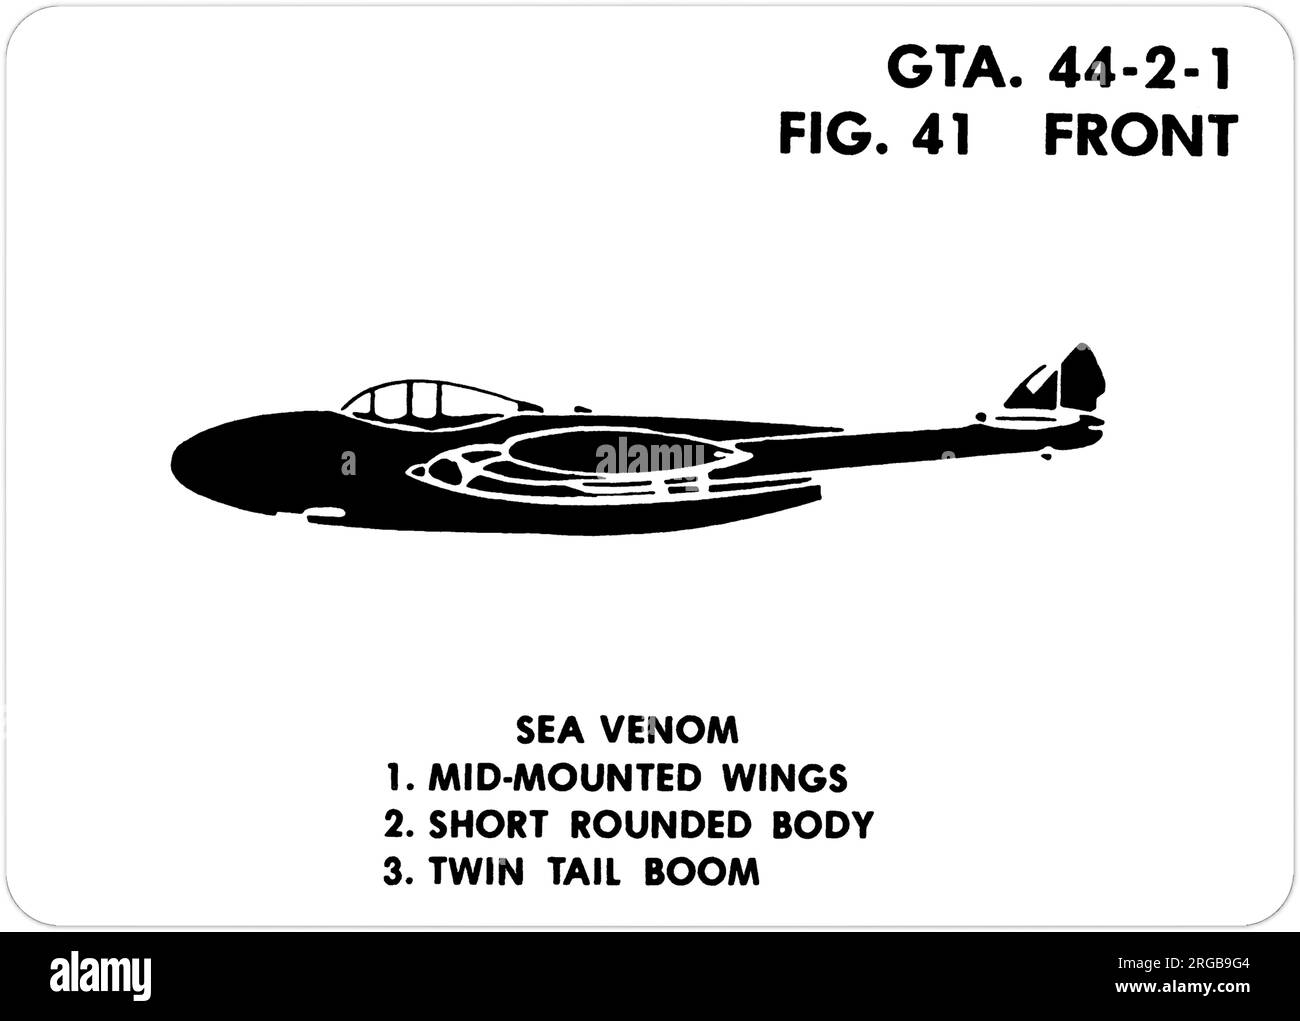 De Havilland Sea Venom F(AW).23. Il s'agit de l'une des séries de Graphics Training AIDS (GTA) utilisées par l'armée des États-Unis pour former leur personnel à reconnaître les avions amicaux et hostiles. Cet ensemble, GTA 44-2-1, a été publié en July1977. L'appareil est équipé d'appareils provenant du Canada, de l'Italie, du Royaume-Uni, des États-Unis et de l'URSS. Banque D'Images